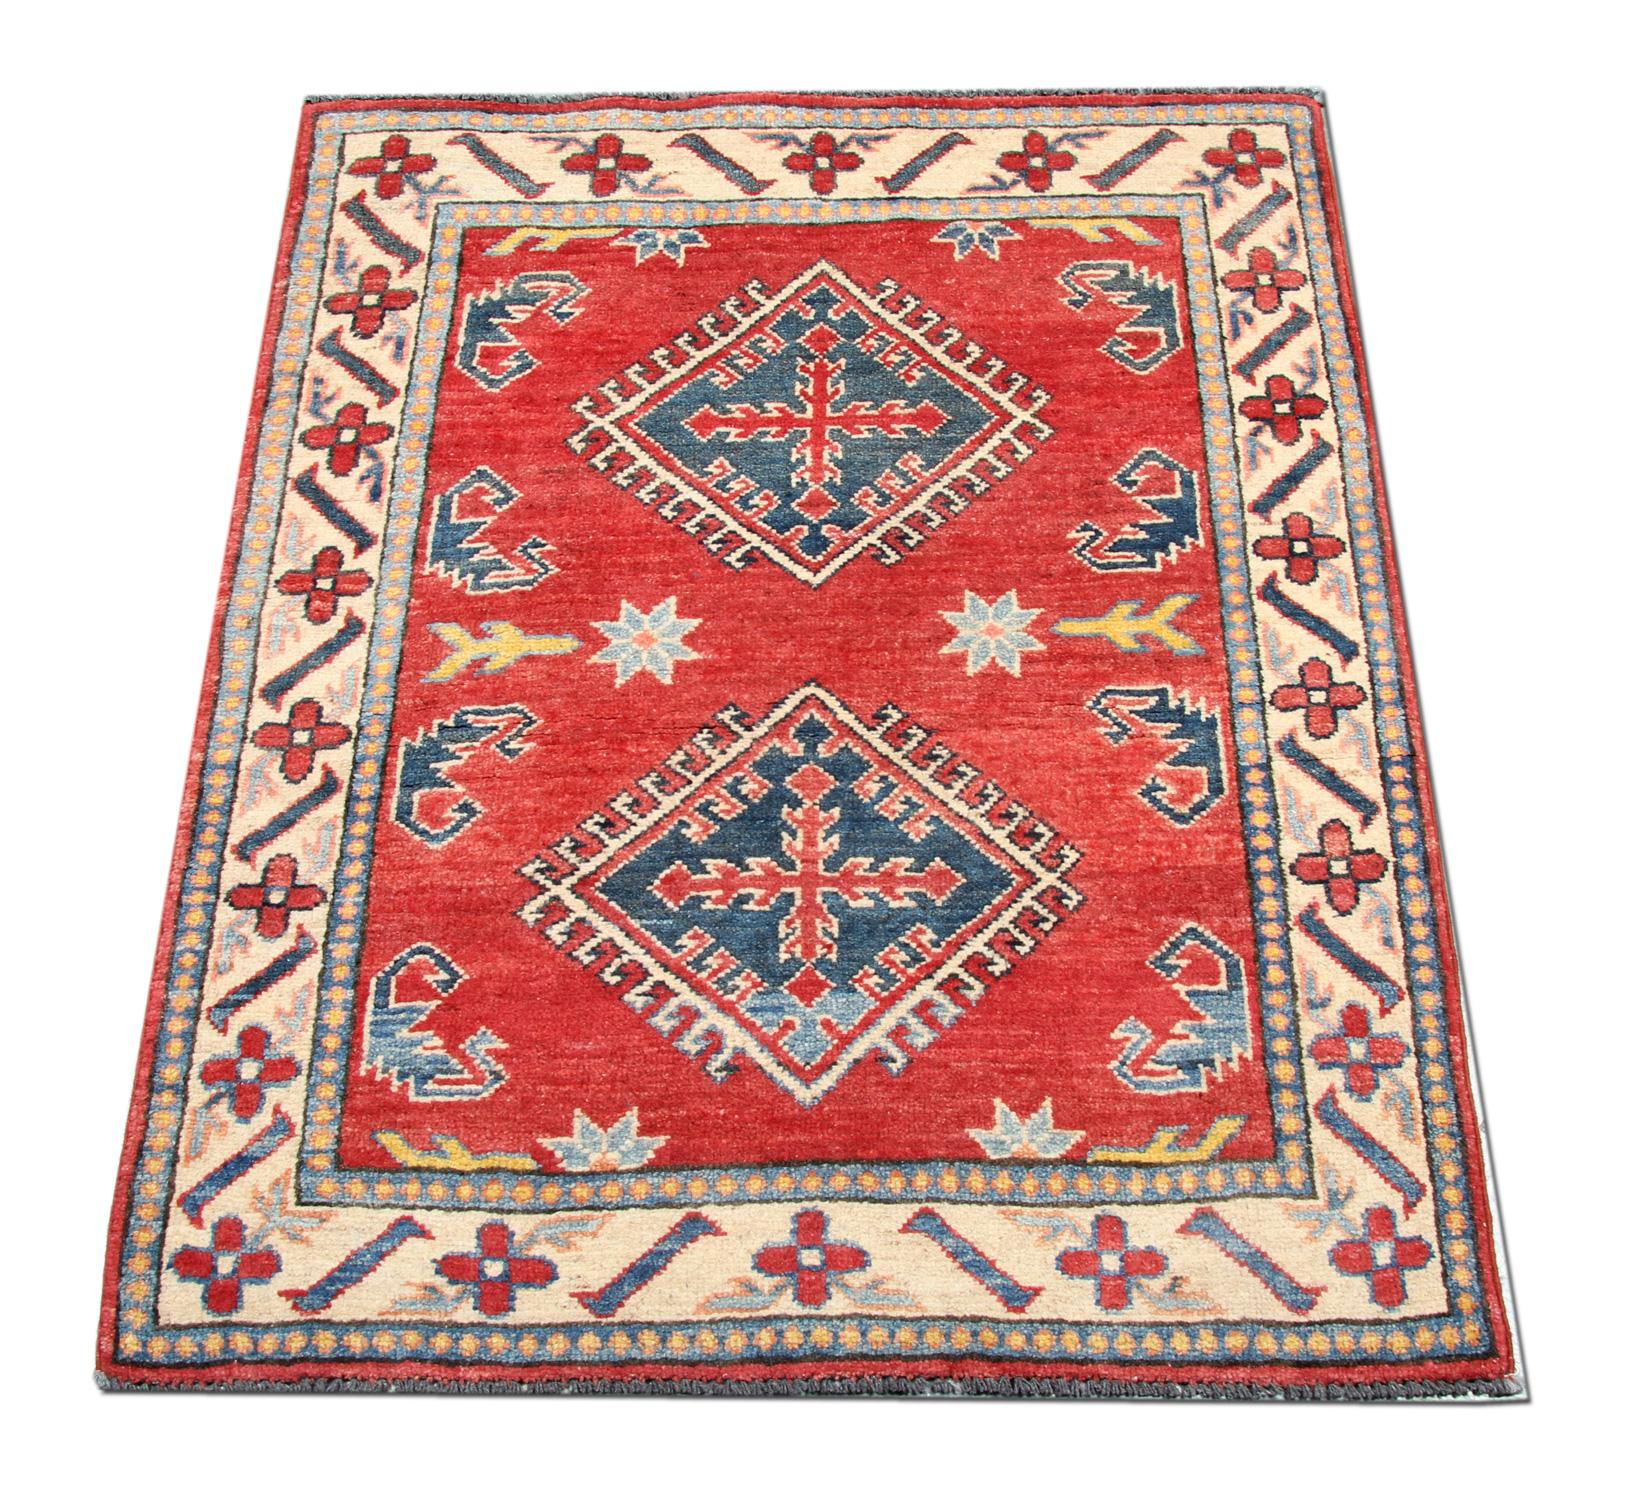 Dieser kleine, neue, traditionelle, handgewebte Teppich zeigt Muster aus der Region Kazak. Traditionelle Teppiche werden in der Region Afghanistan hergestellt. Afghanische Knüpfer haben diesen Blumenteppich aus hochwertiger Wolle und Baumwolle